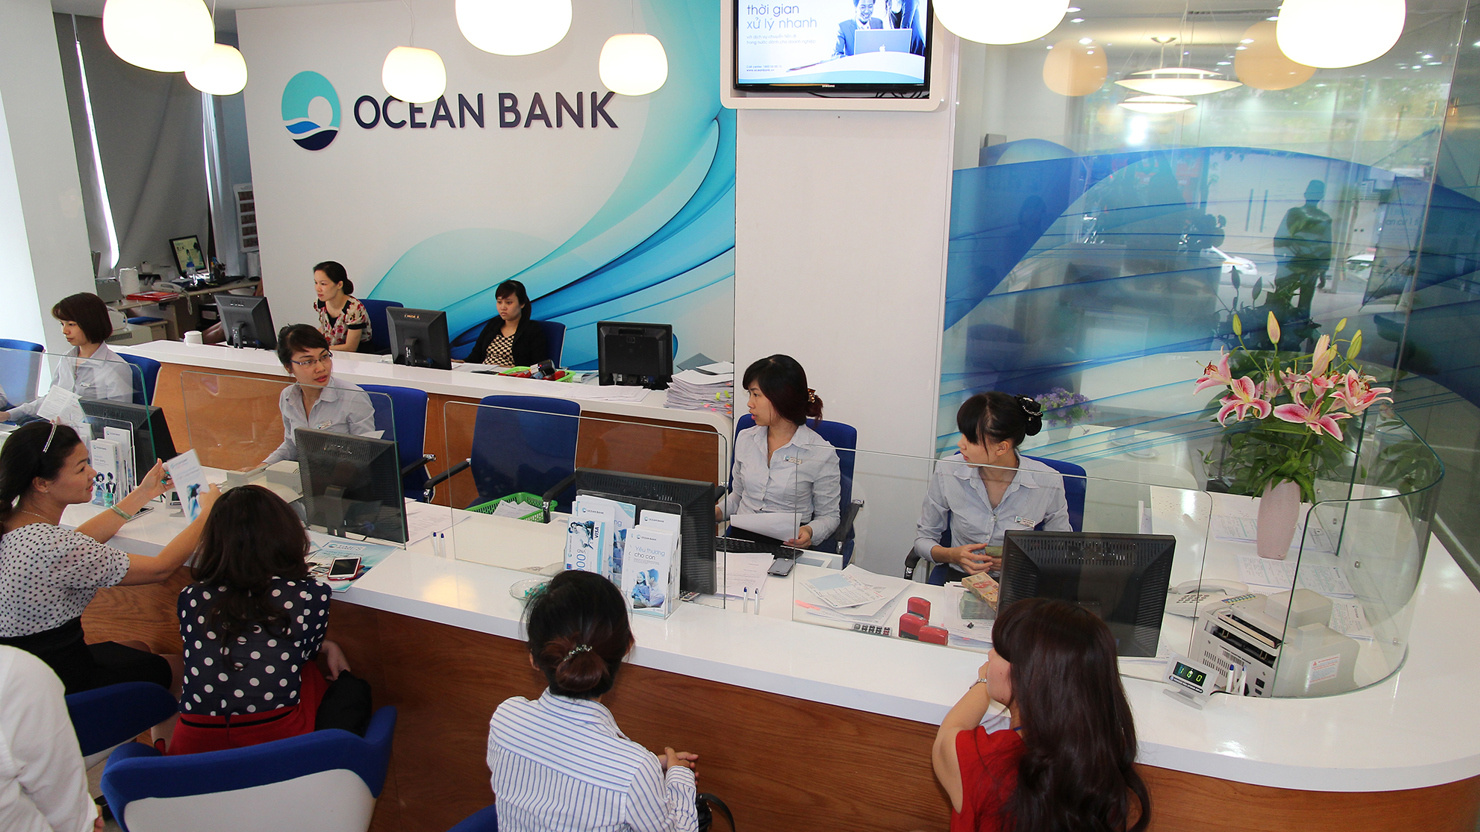 OceanBank đã cải tiến quy trình, rút ngắn thời gian xử lý hồ sơ chỉ còn tối thiểu 02 ngày làm việc.Nguồn: internet.